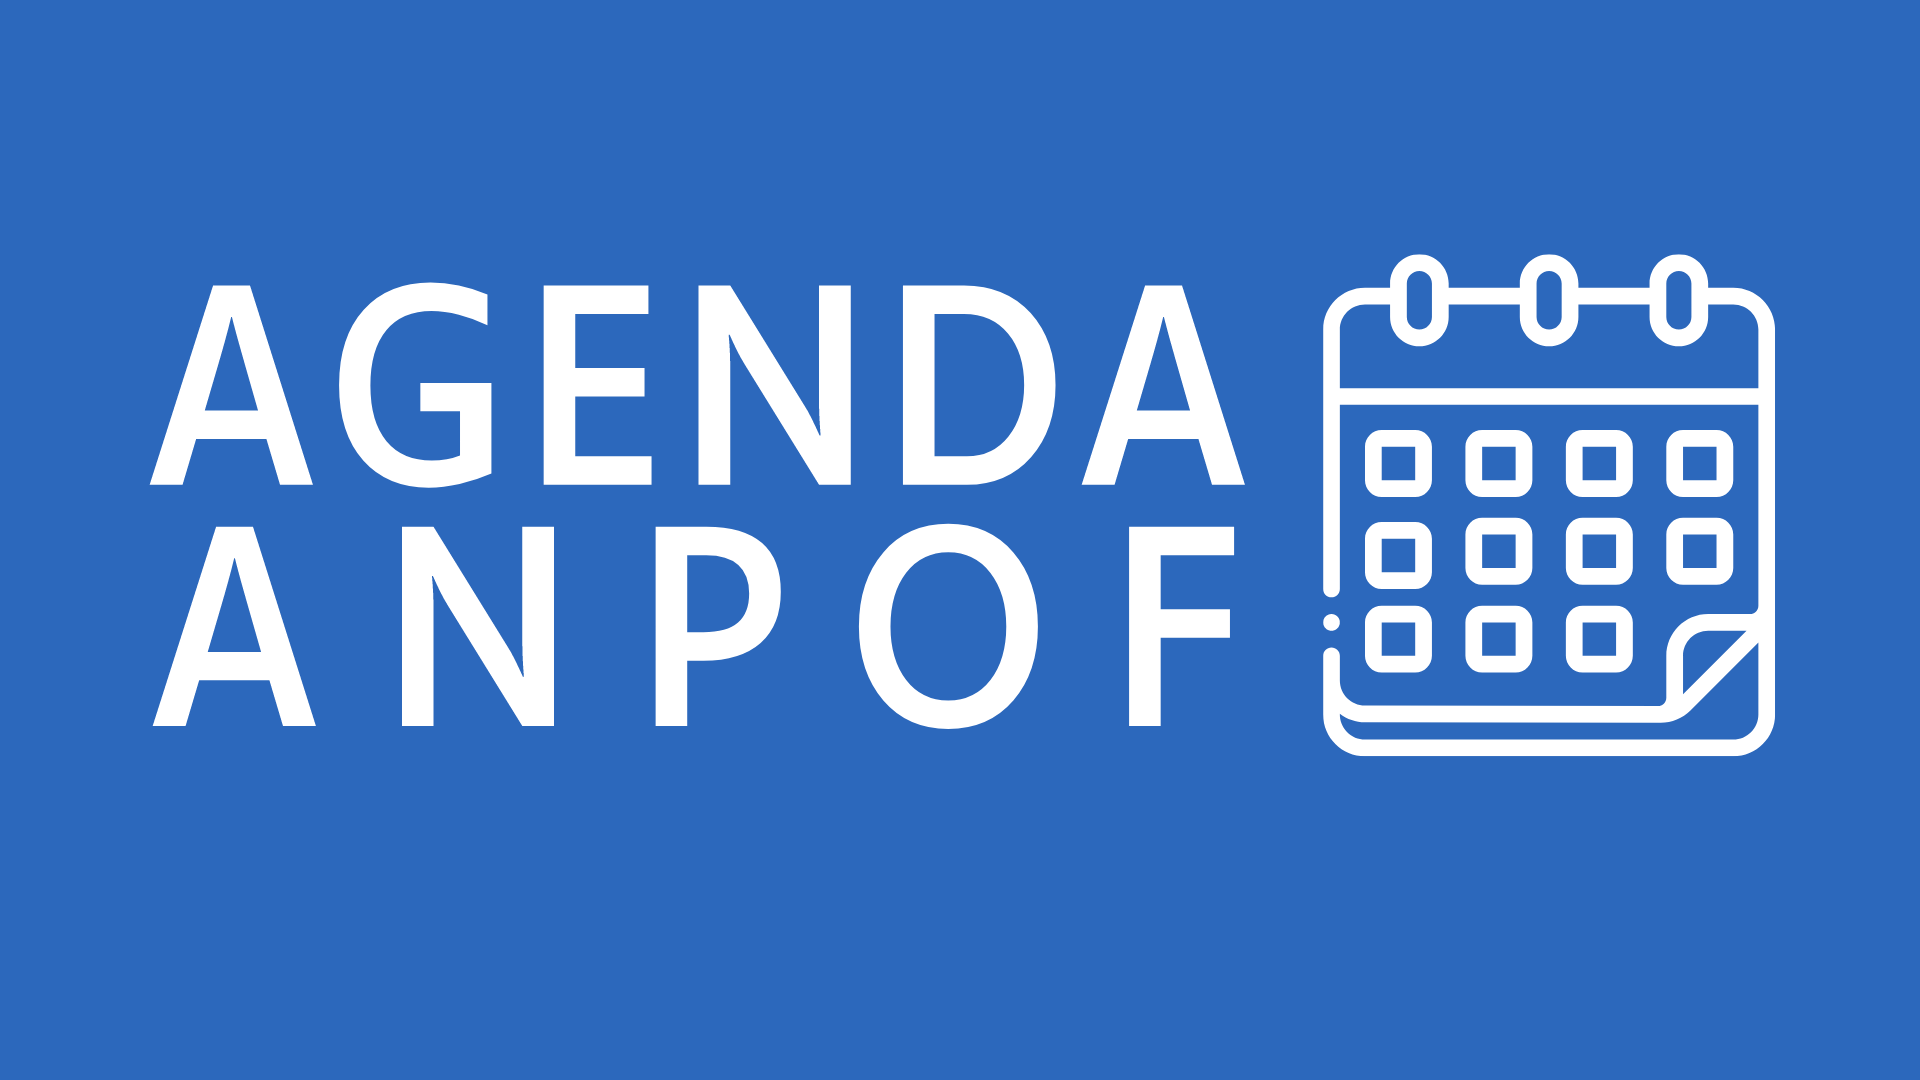 Agenda ANPOF - Eventos e lançamentos